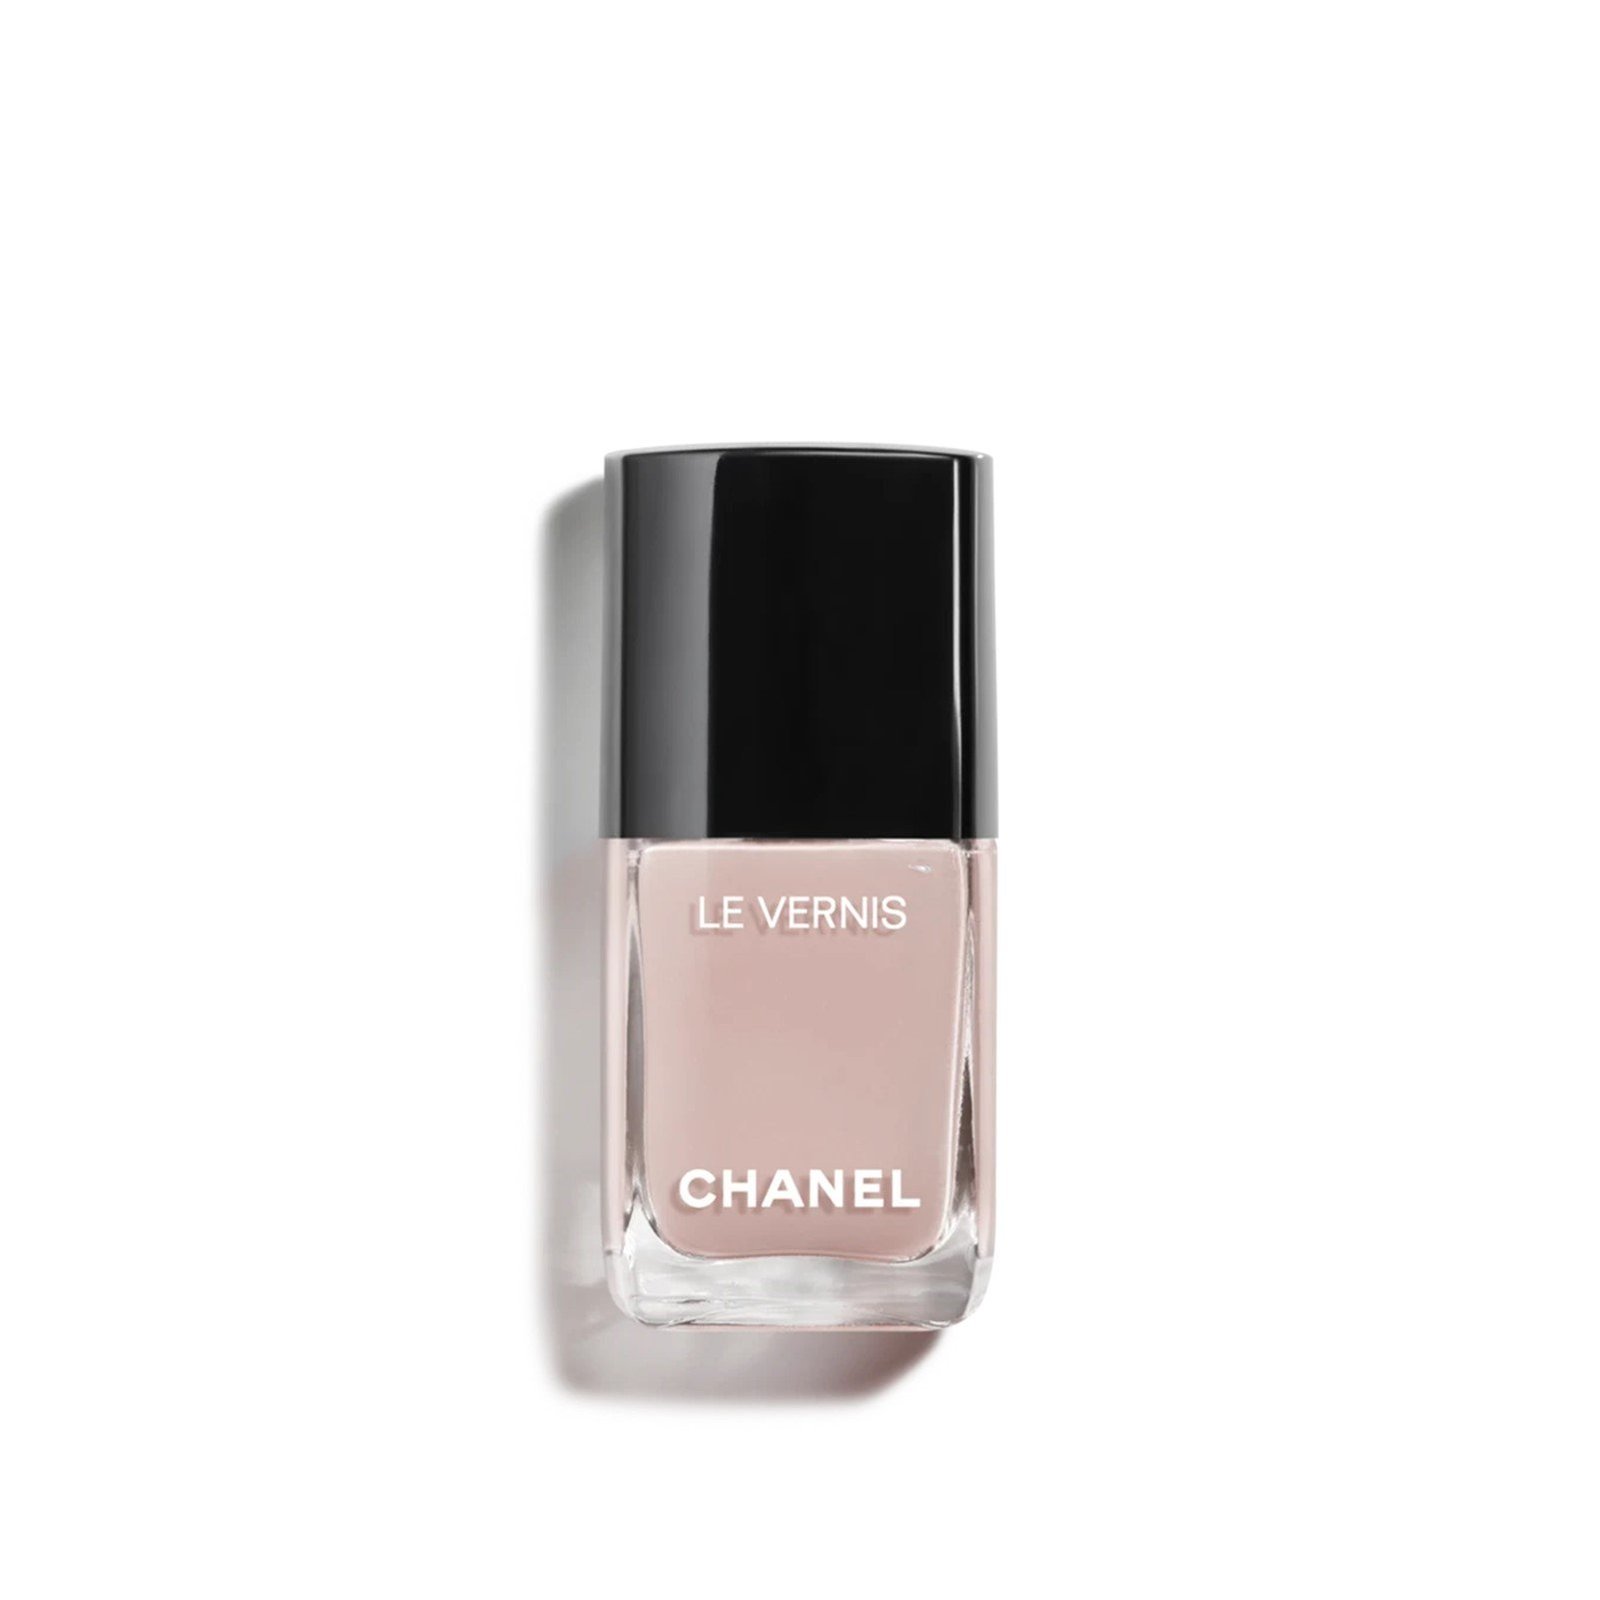 RASPRODATO! Chanel le vernis longwear nail colour,504 organdi